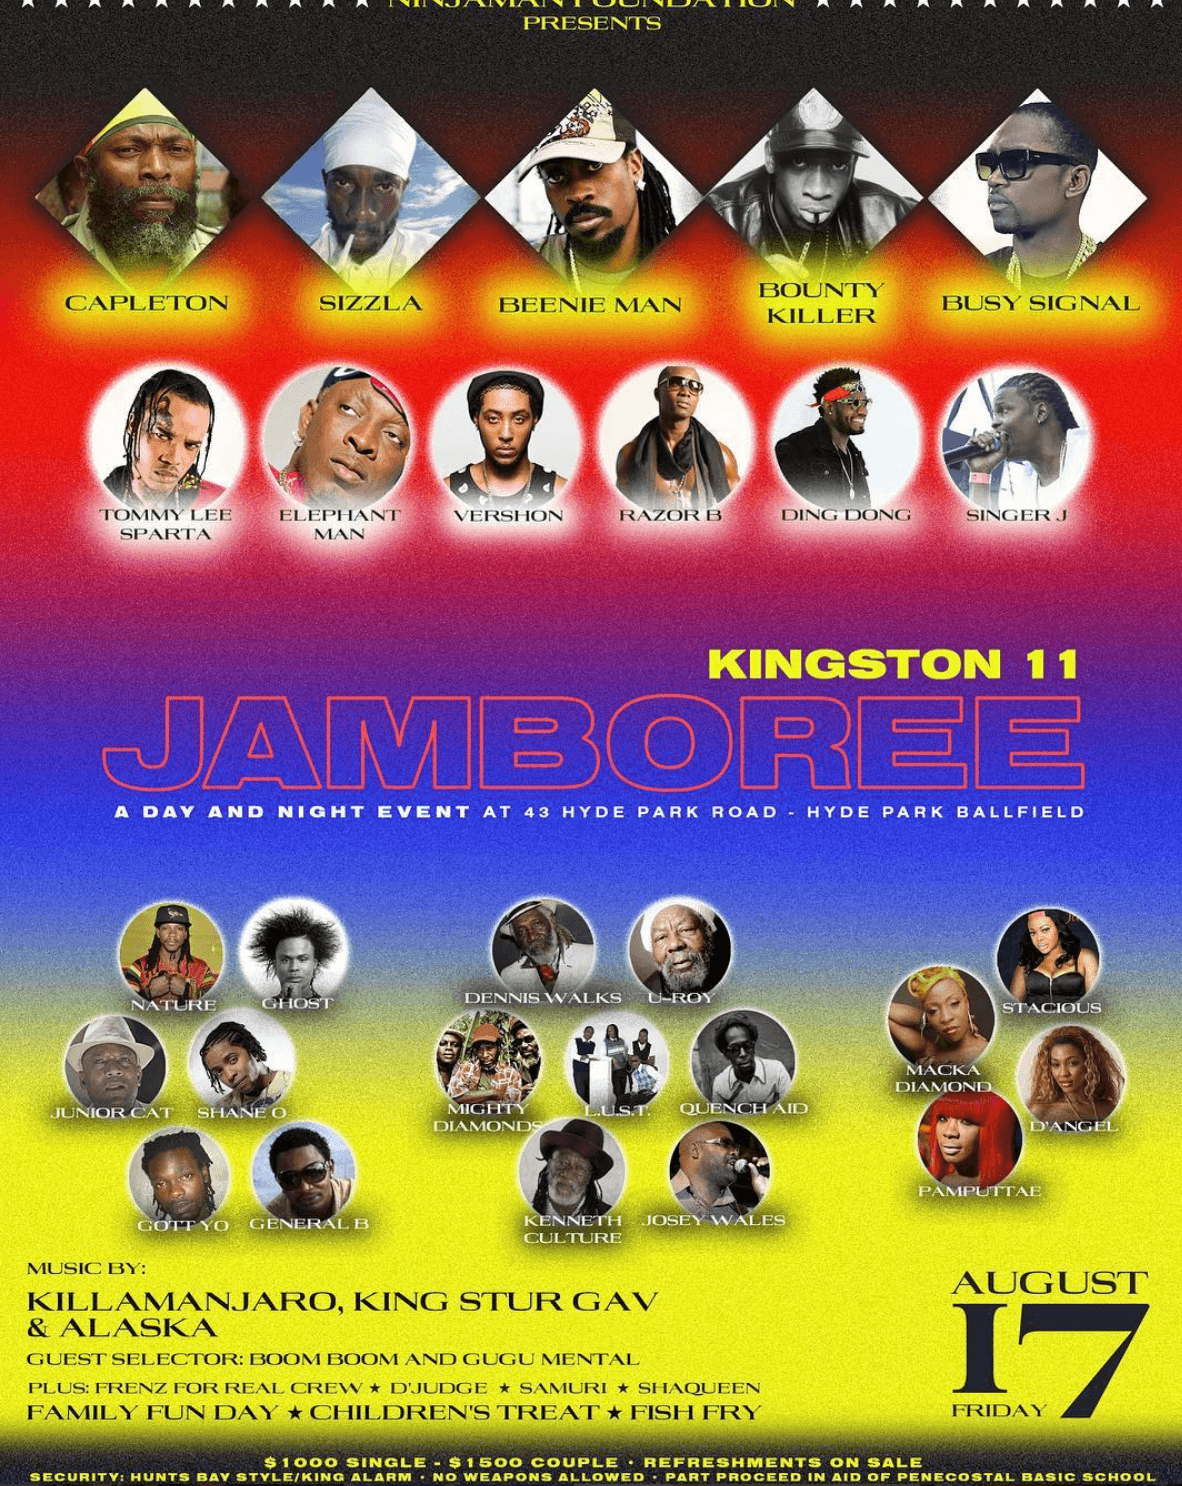 Kingston 11 Jamboree